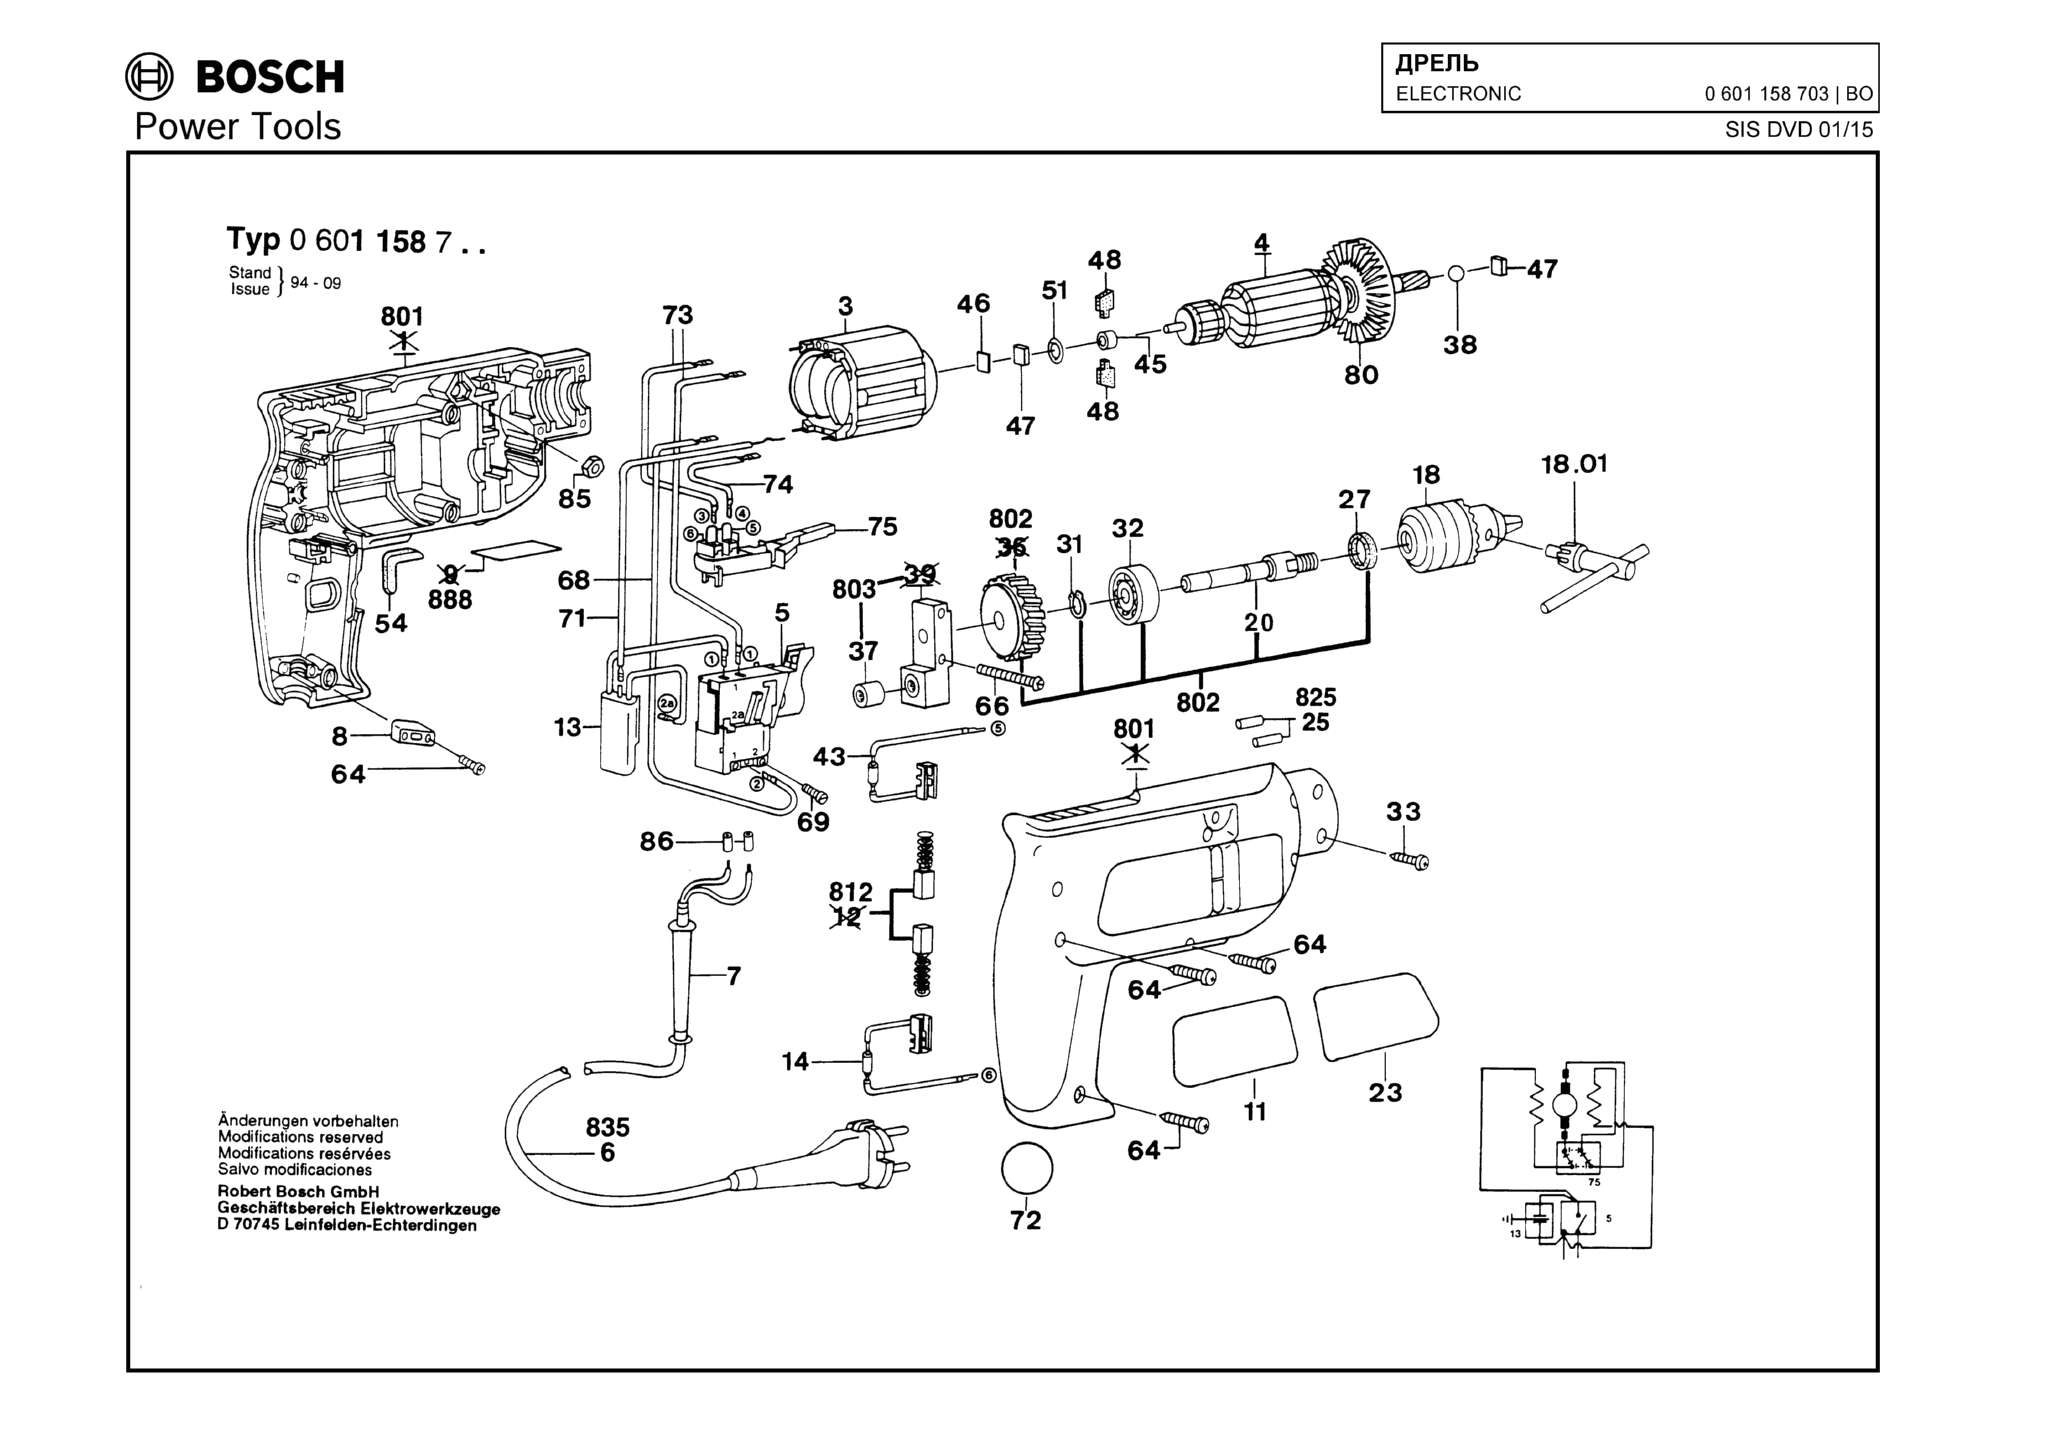 Запчасти, схема и деталировка Bosch ELECTRONIC (ТИП 0601158703)